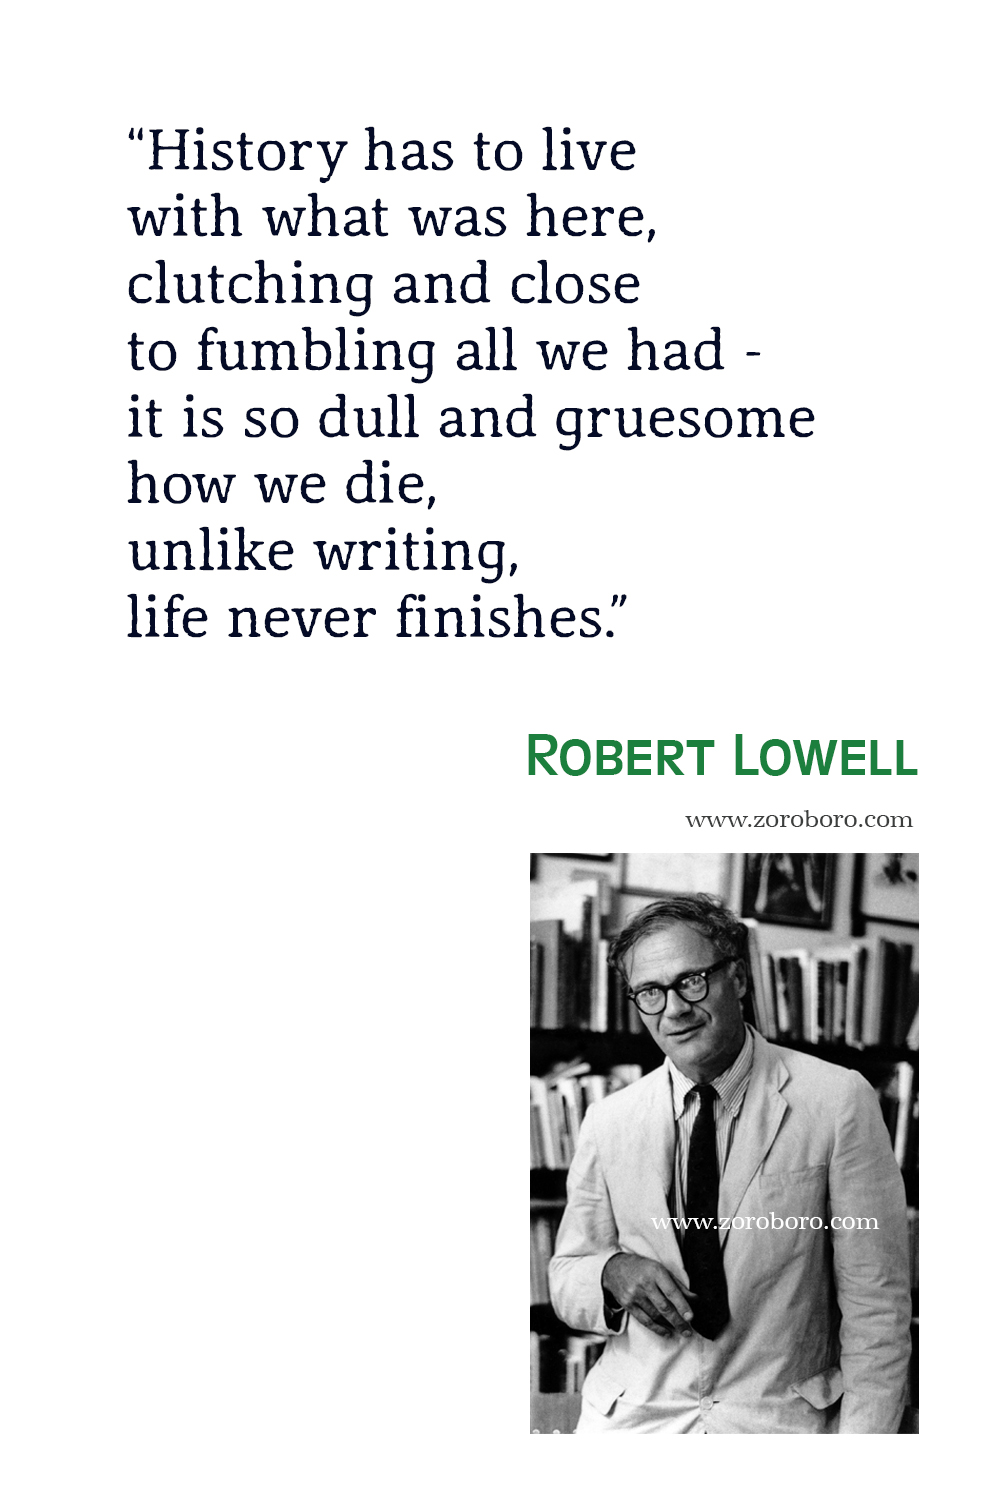 Robert Lowell Quotes, Poet, Poetry, Robert Lowell Poems, Robert Lowell Books Quotes, Robert Lowell : Selected Poems, Robert Lowell Life Studies.